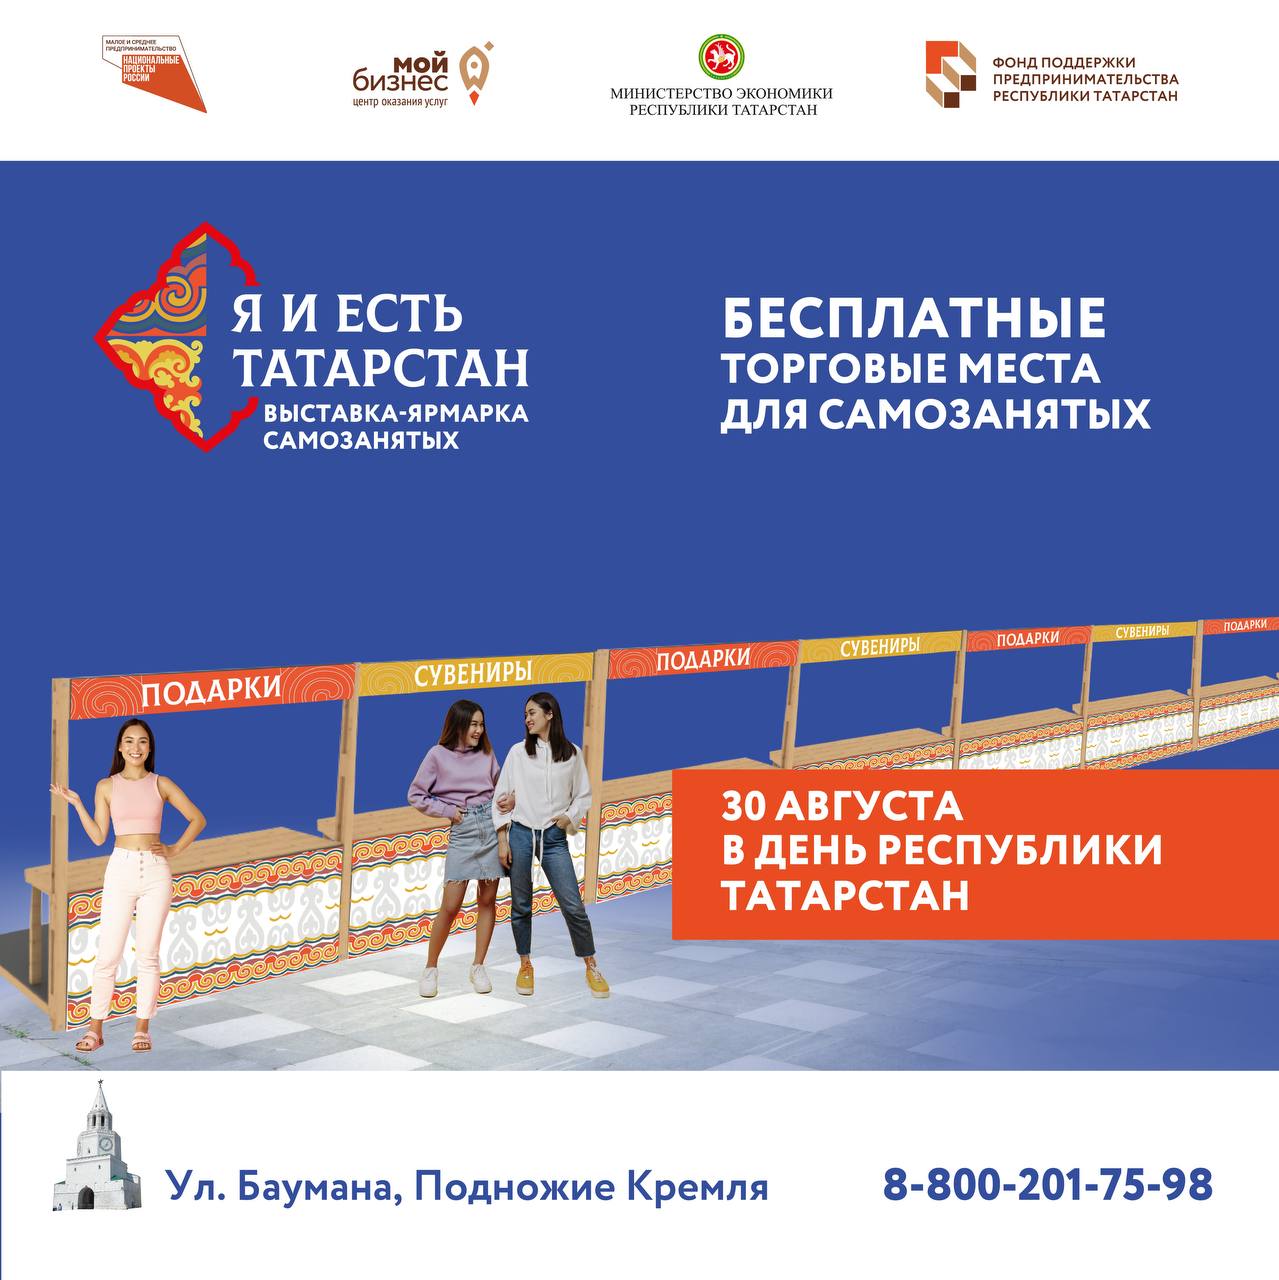 Бесплатные торговые места для самозанятых в День Республики Татарстан!